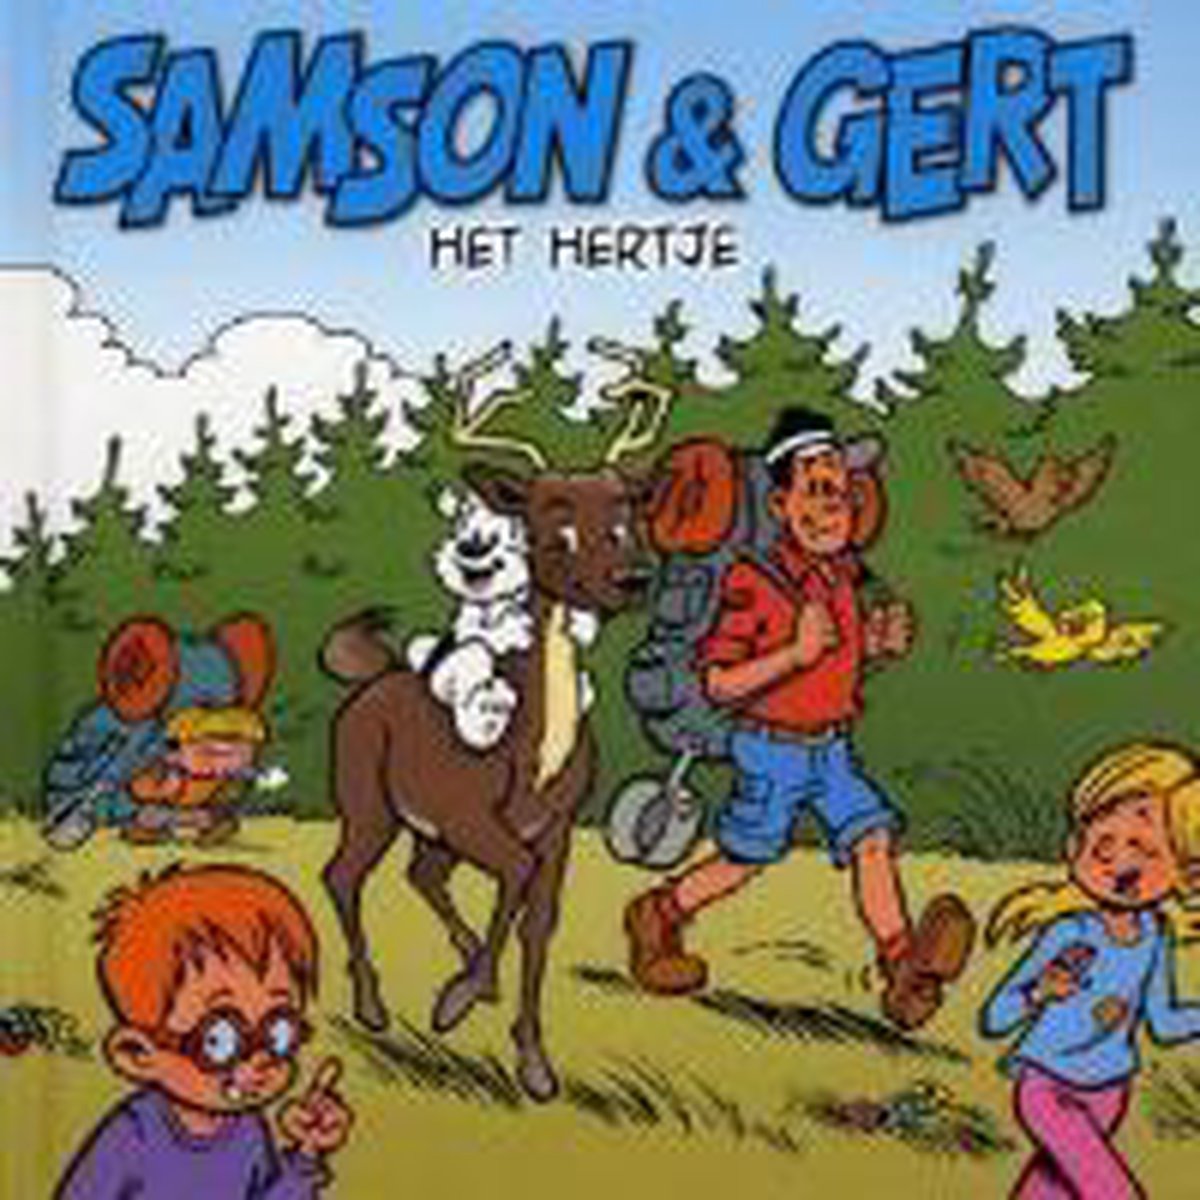 Samson & Gert: Het hertje / Samson & Gert